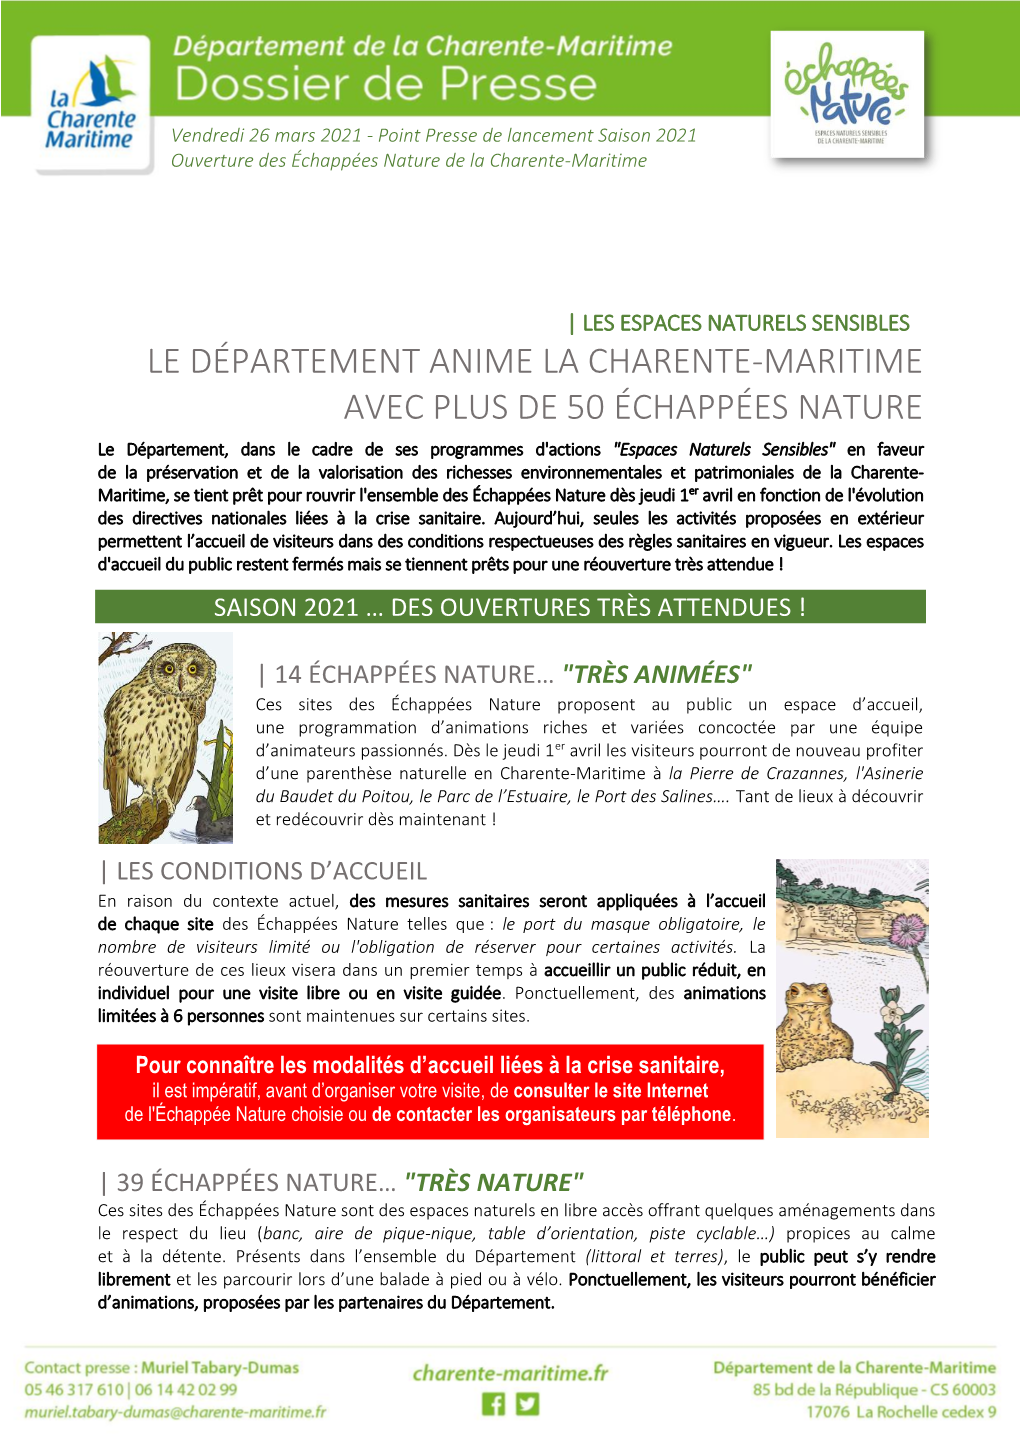 Le Département Anime La Charente-Maritime Avec Plus De 50 Échappées Nature